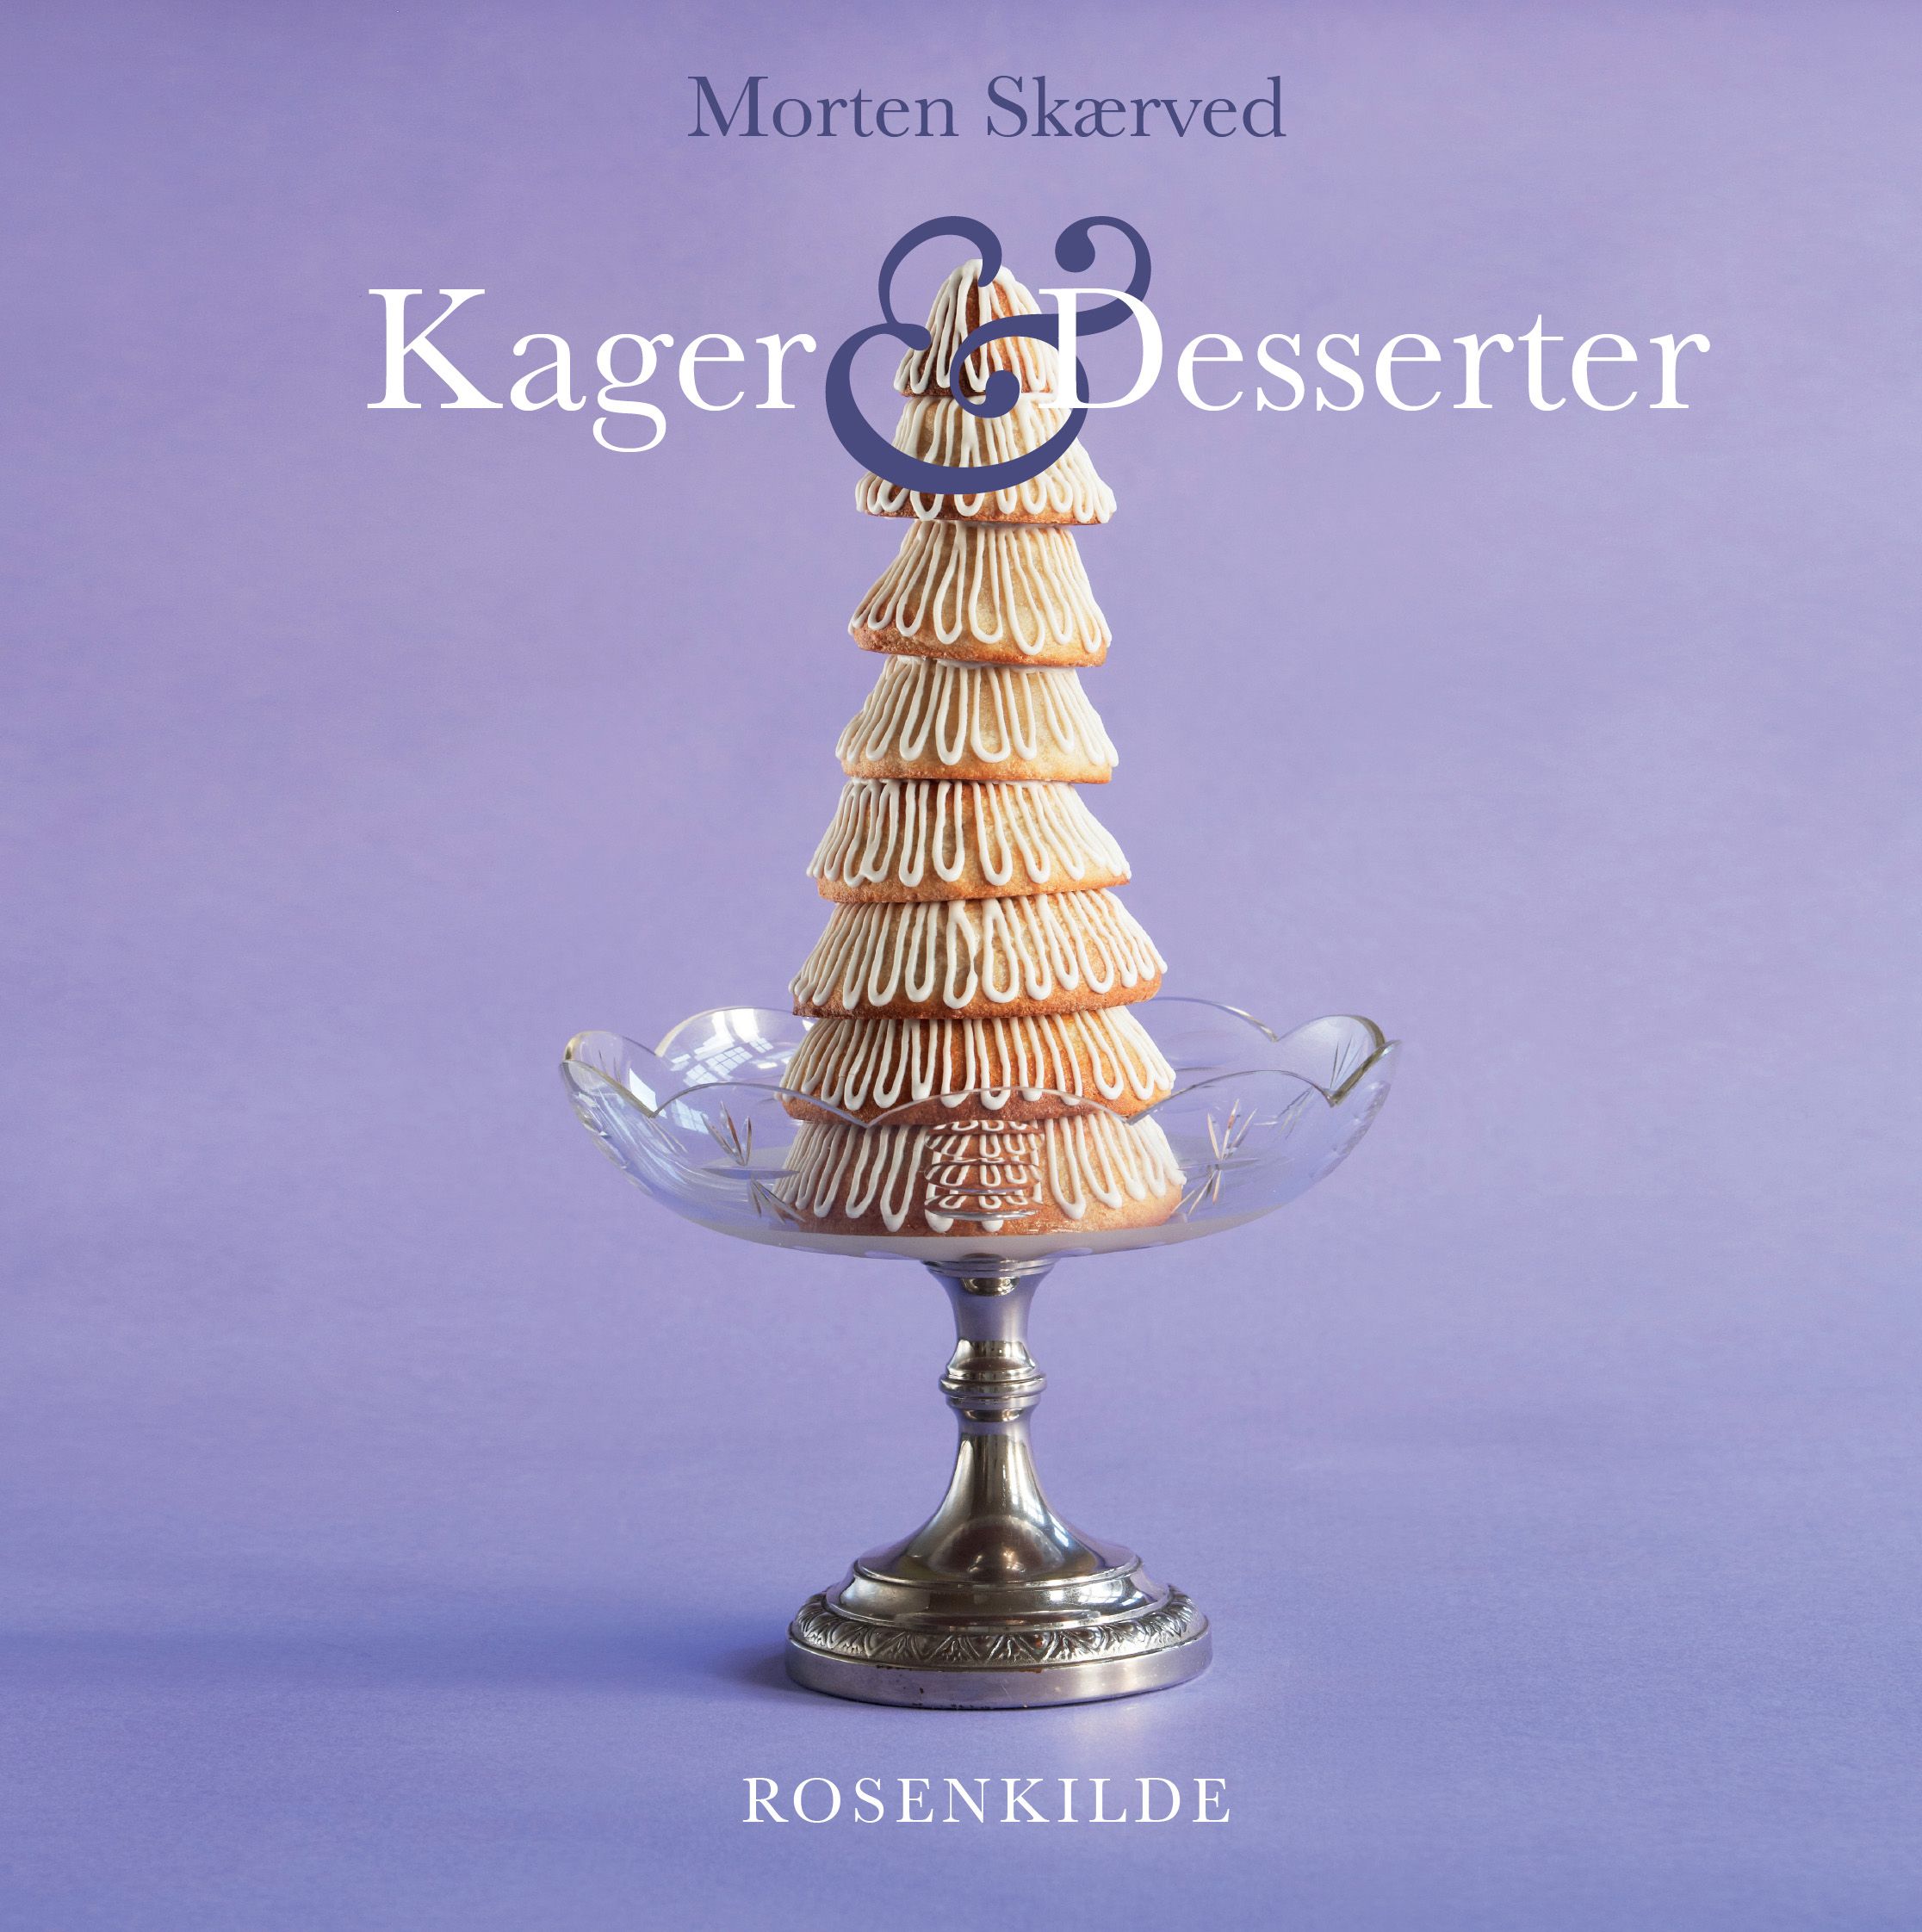 Kager og desserter, e-bok av Morten Skærved